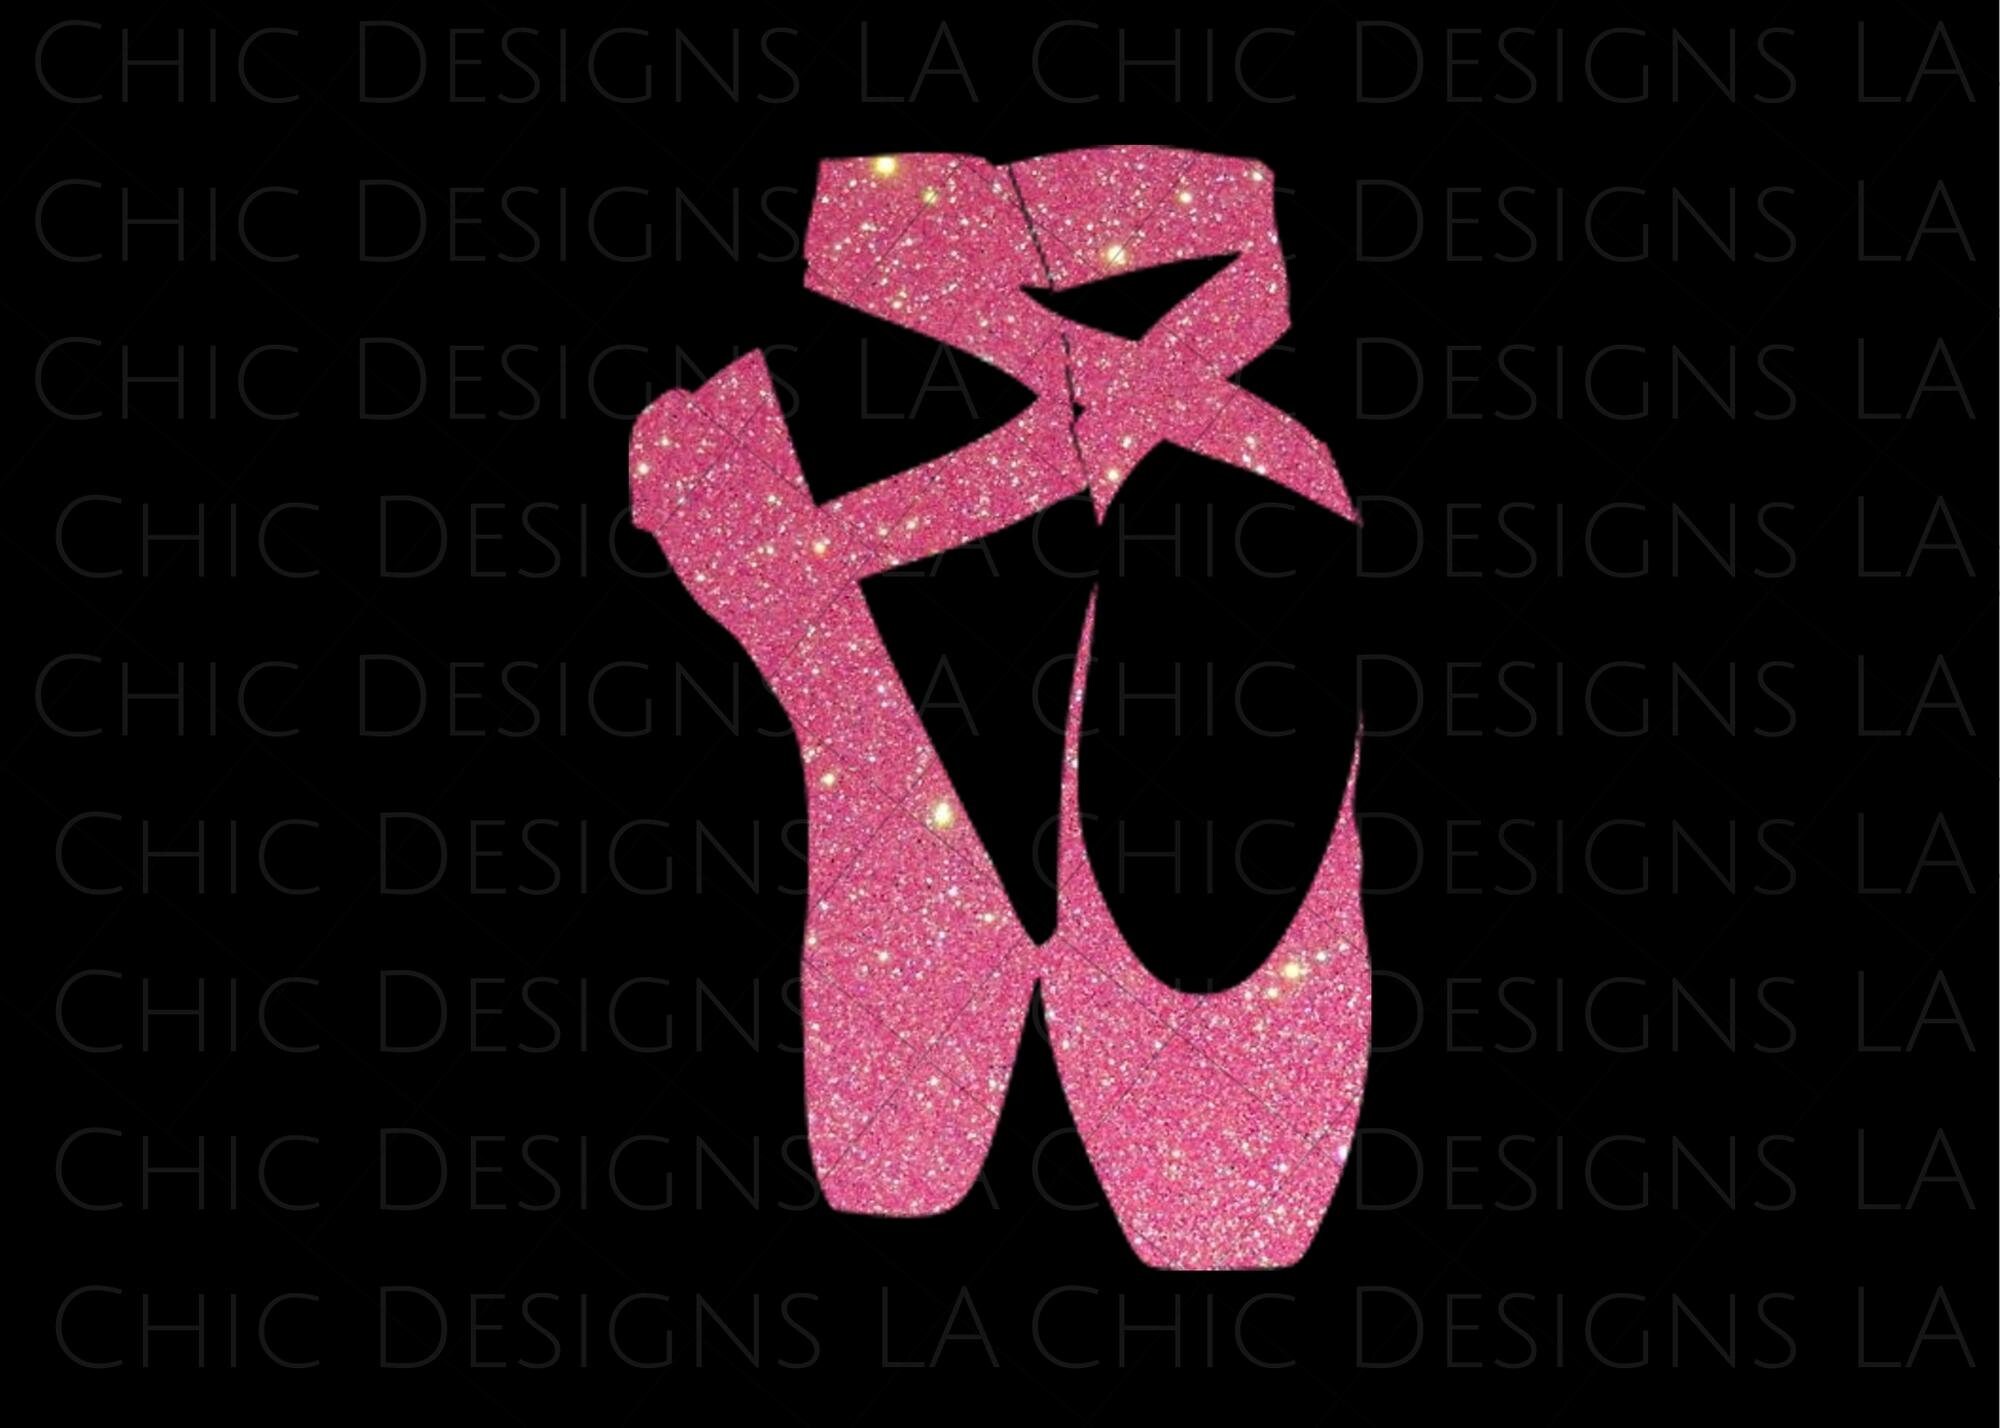 Schoenen Meisjesschoenen Dansschoenen Vintage Soft Pink Ballerina Point Slippers Shoes Crafting Display 